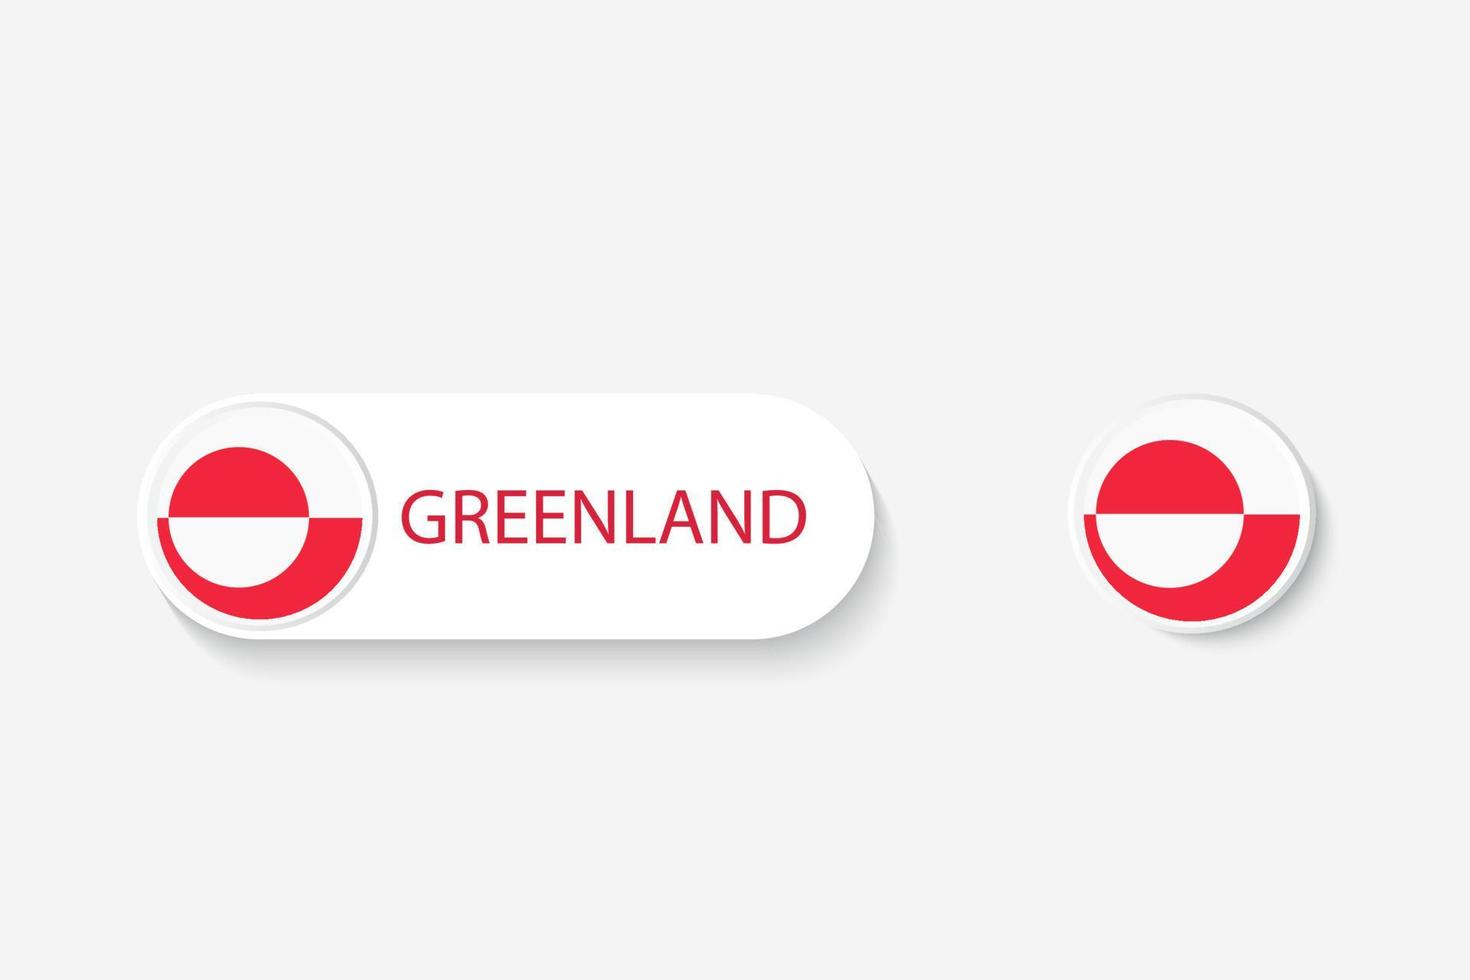 grönlandsknappen flagga i illustration av oval formad med ordet grönland. och knapp flagga grönland. vektor